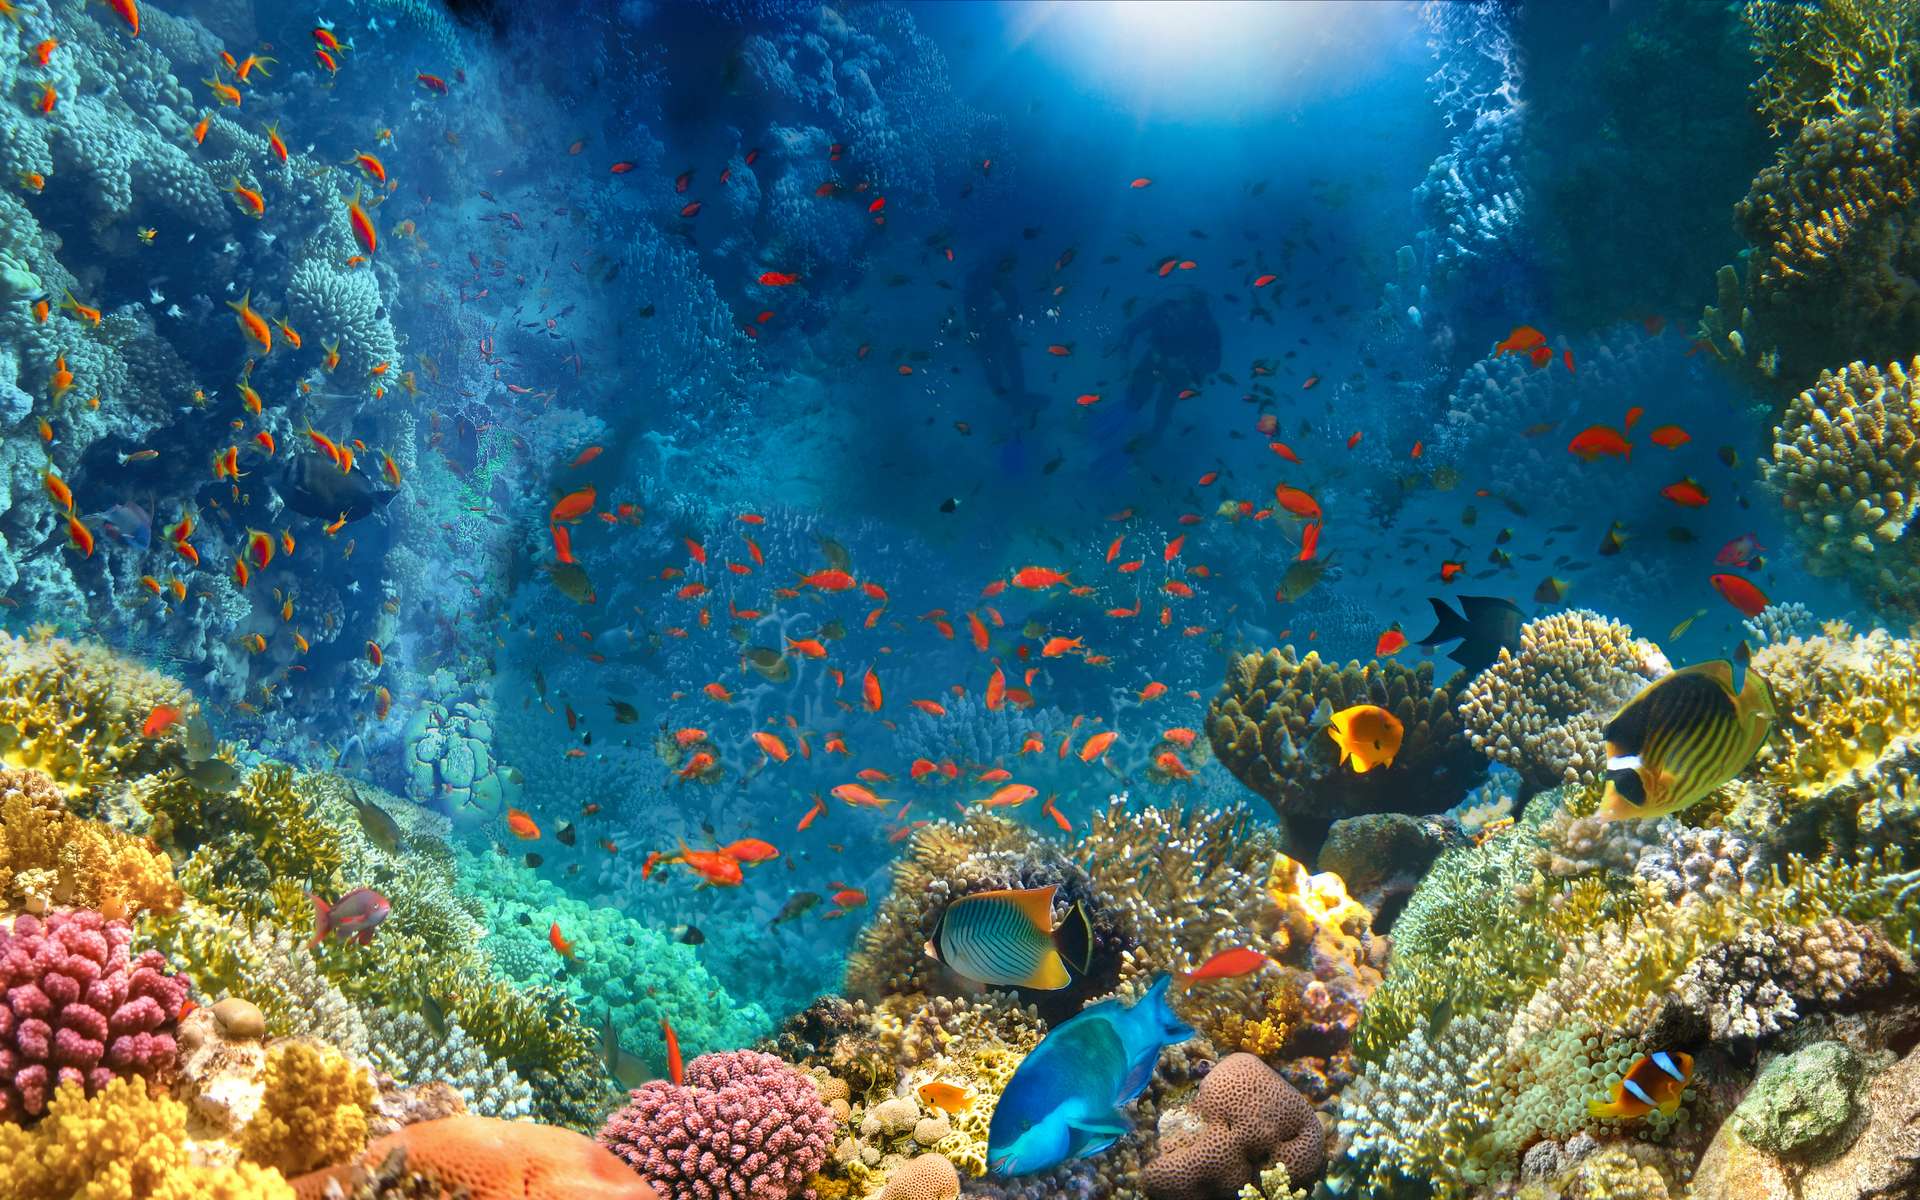 Le terme corail désigne des animaux fixés, généralement en colonies de polypes qui se regroupent pour former des super-organismes. © Solarisys, Adobe Stock